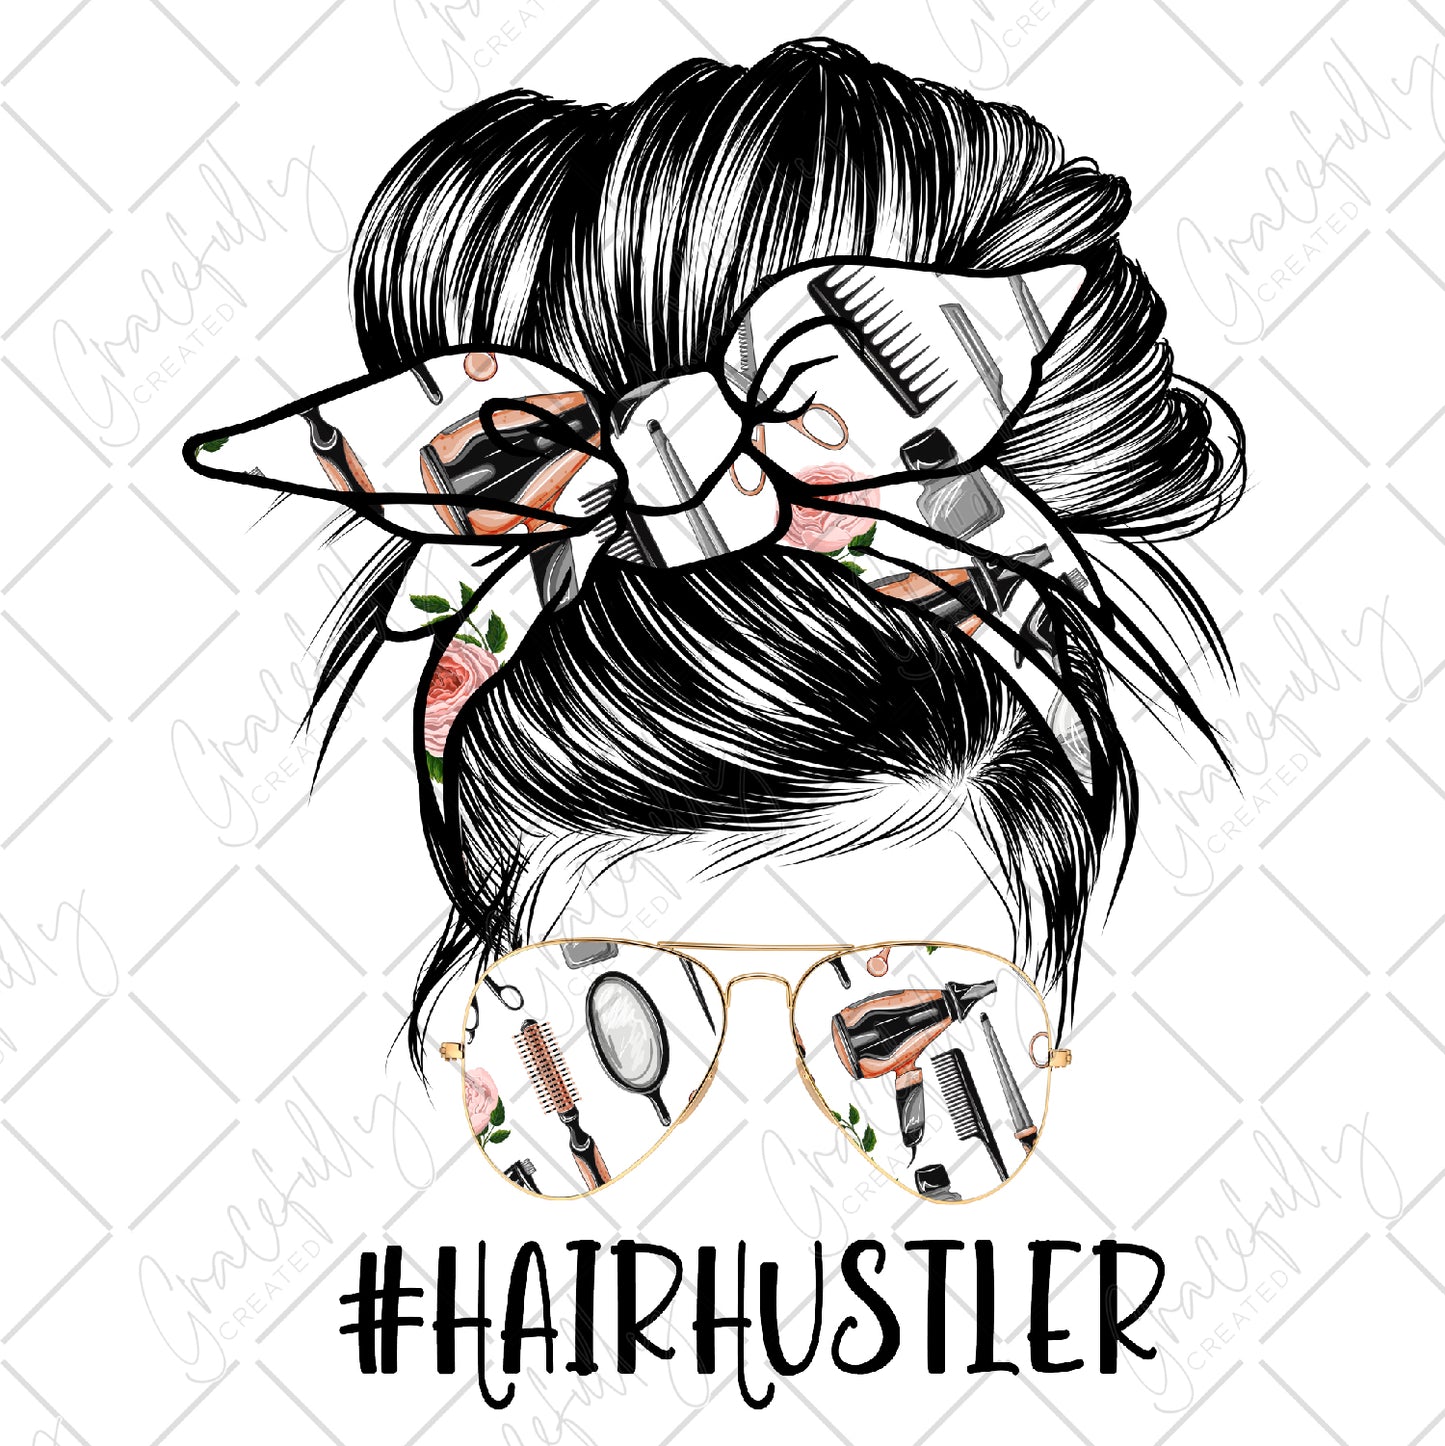 OC52 Hair Hustler